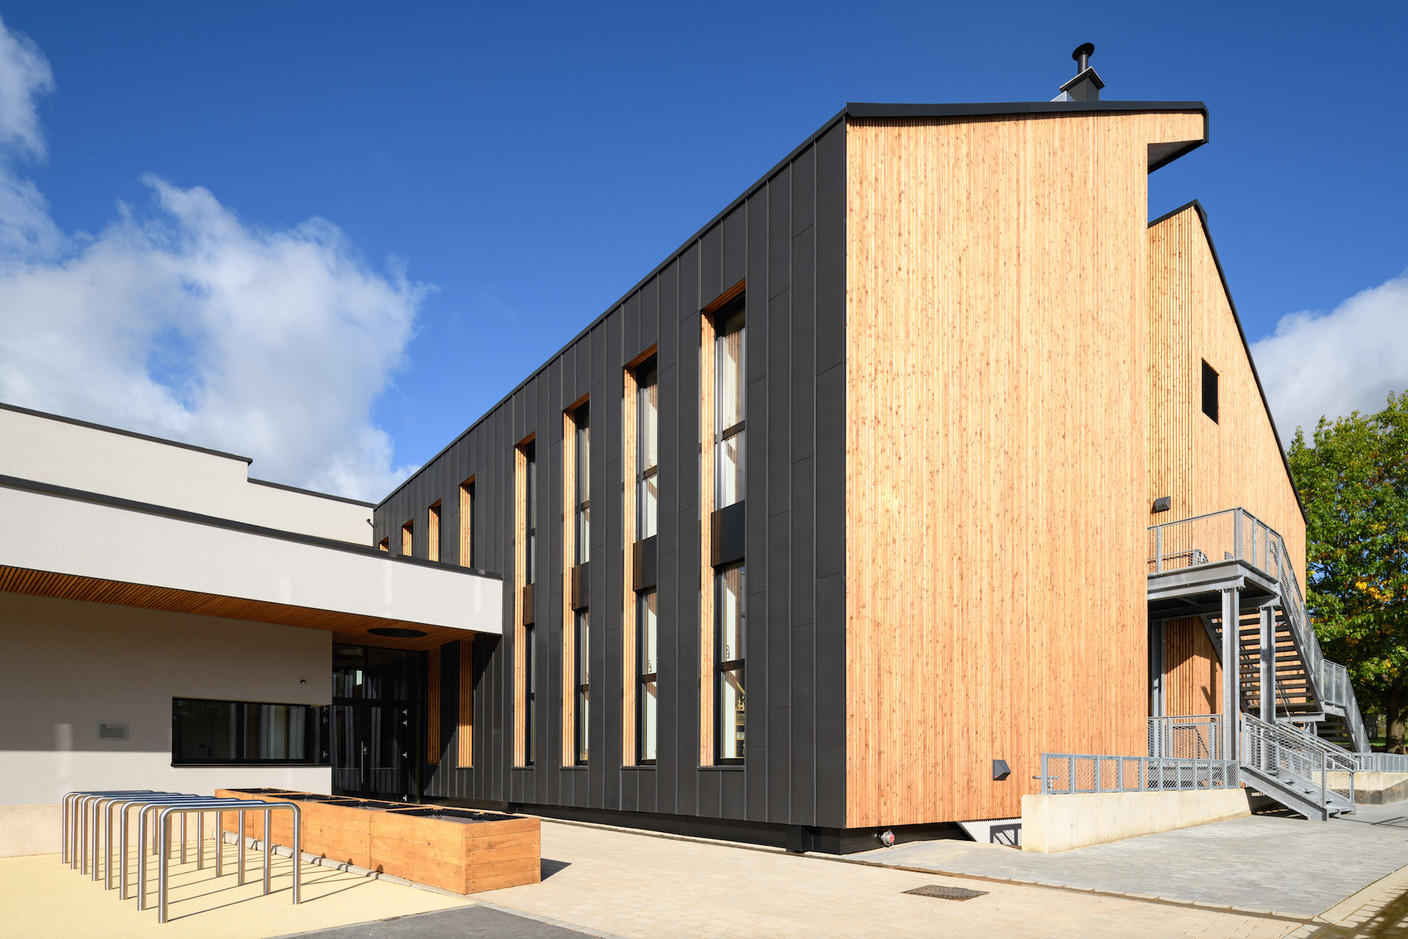 Le bâtiment haut a reçu un bardage de zinc et de bois qui contraste avec le bâtiment bas dont la façade est en crépis. (Photo: Julien Swol)